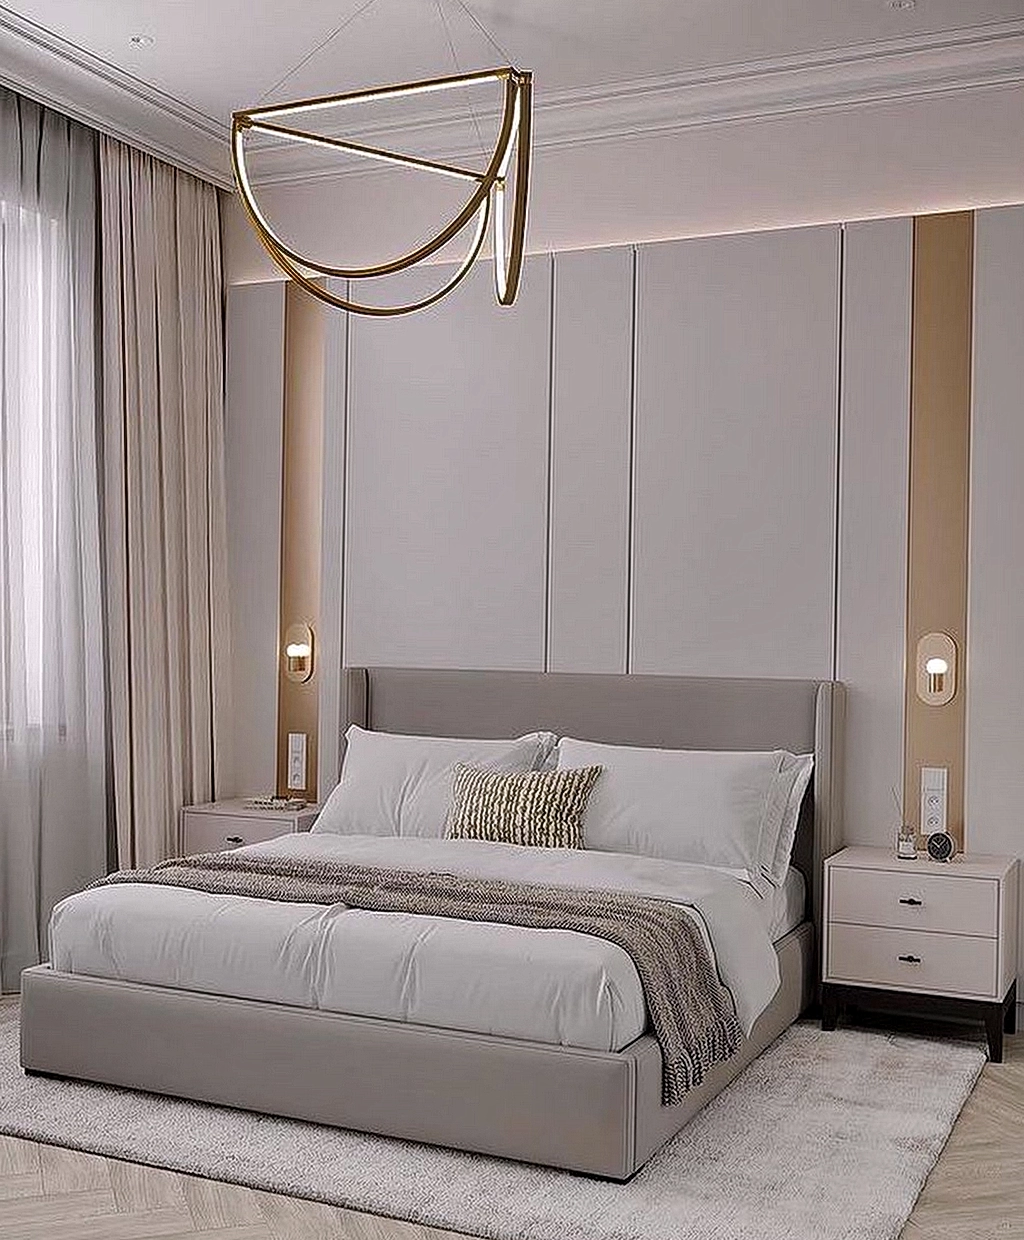 Дизайн спальни 14,12,2021 - №0004 - Bedroom design - mebeltops.com